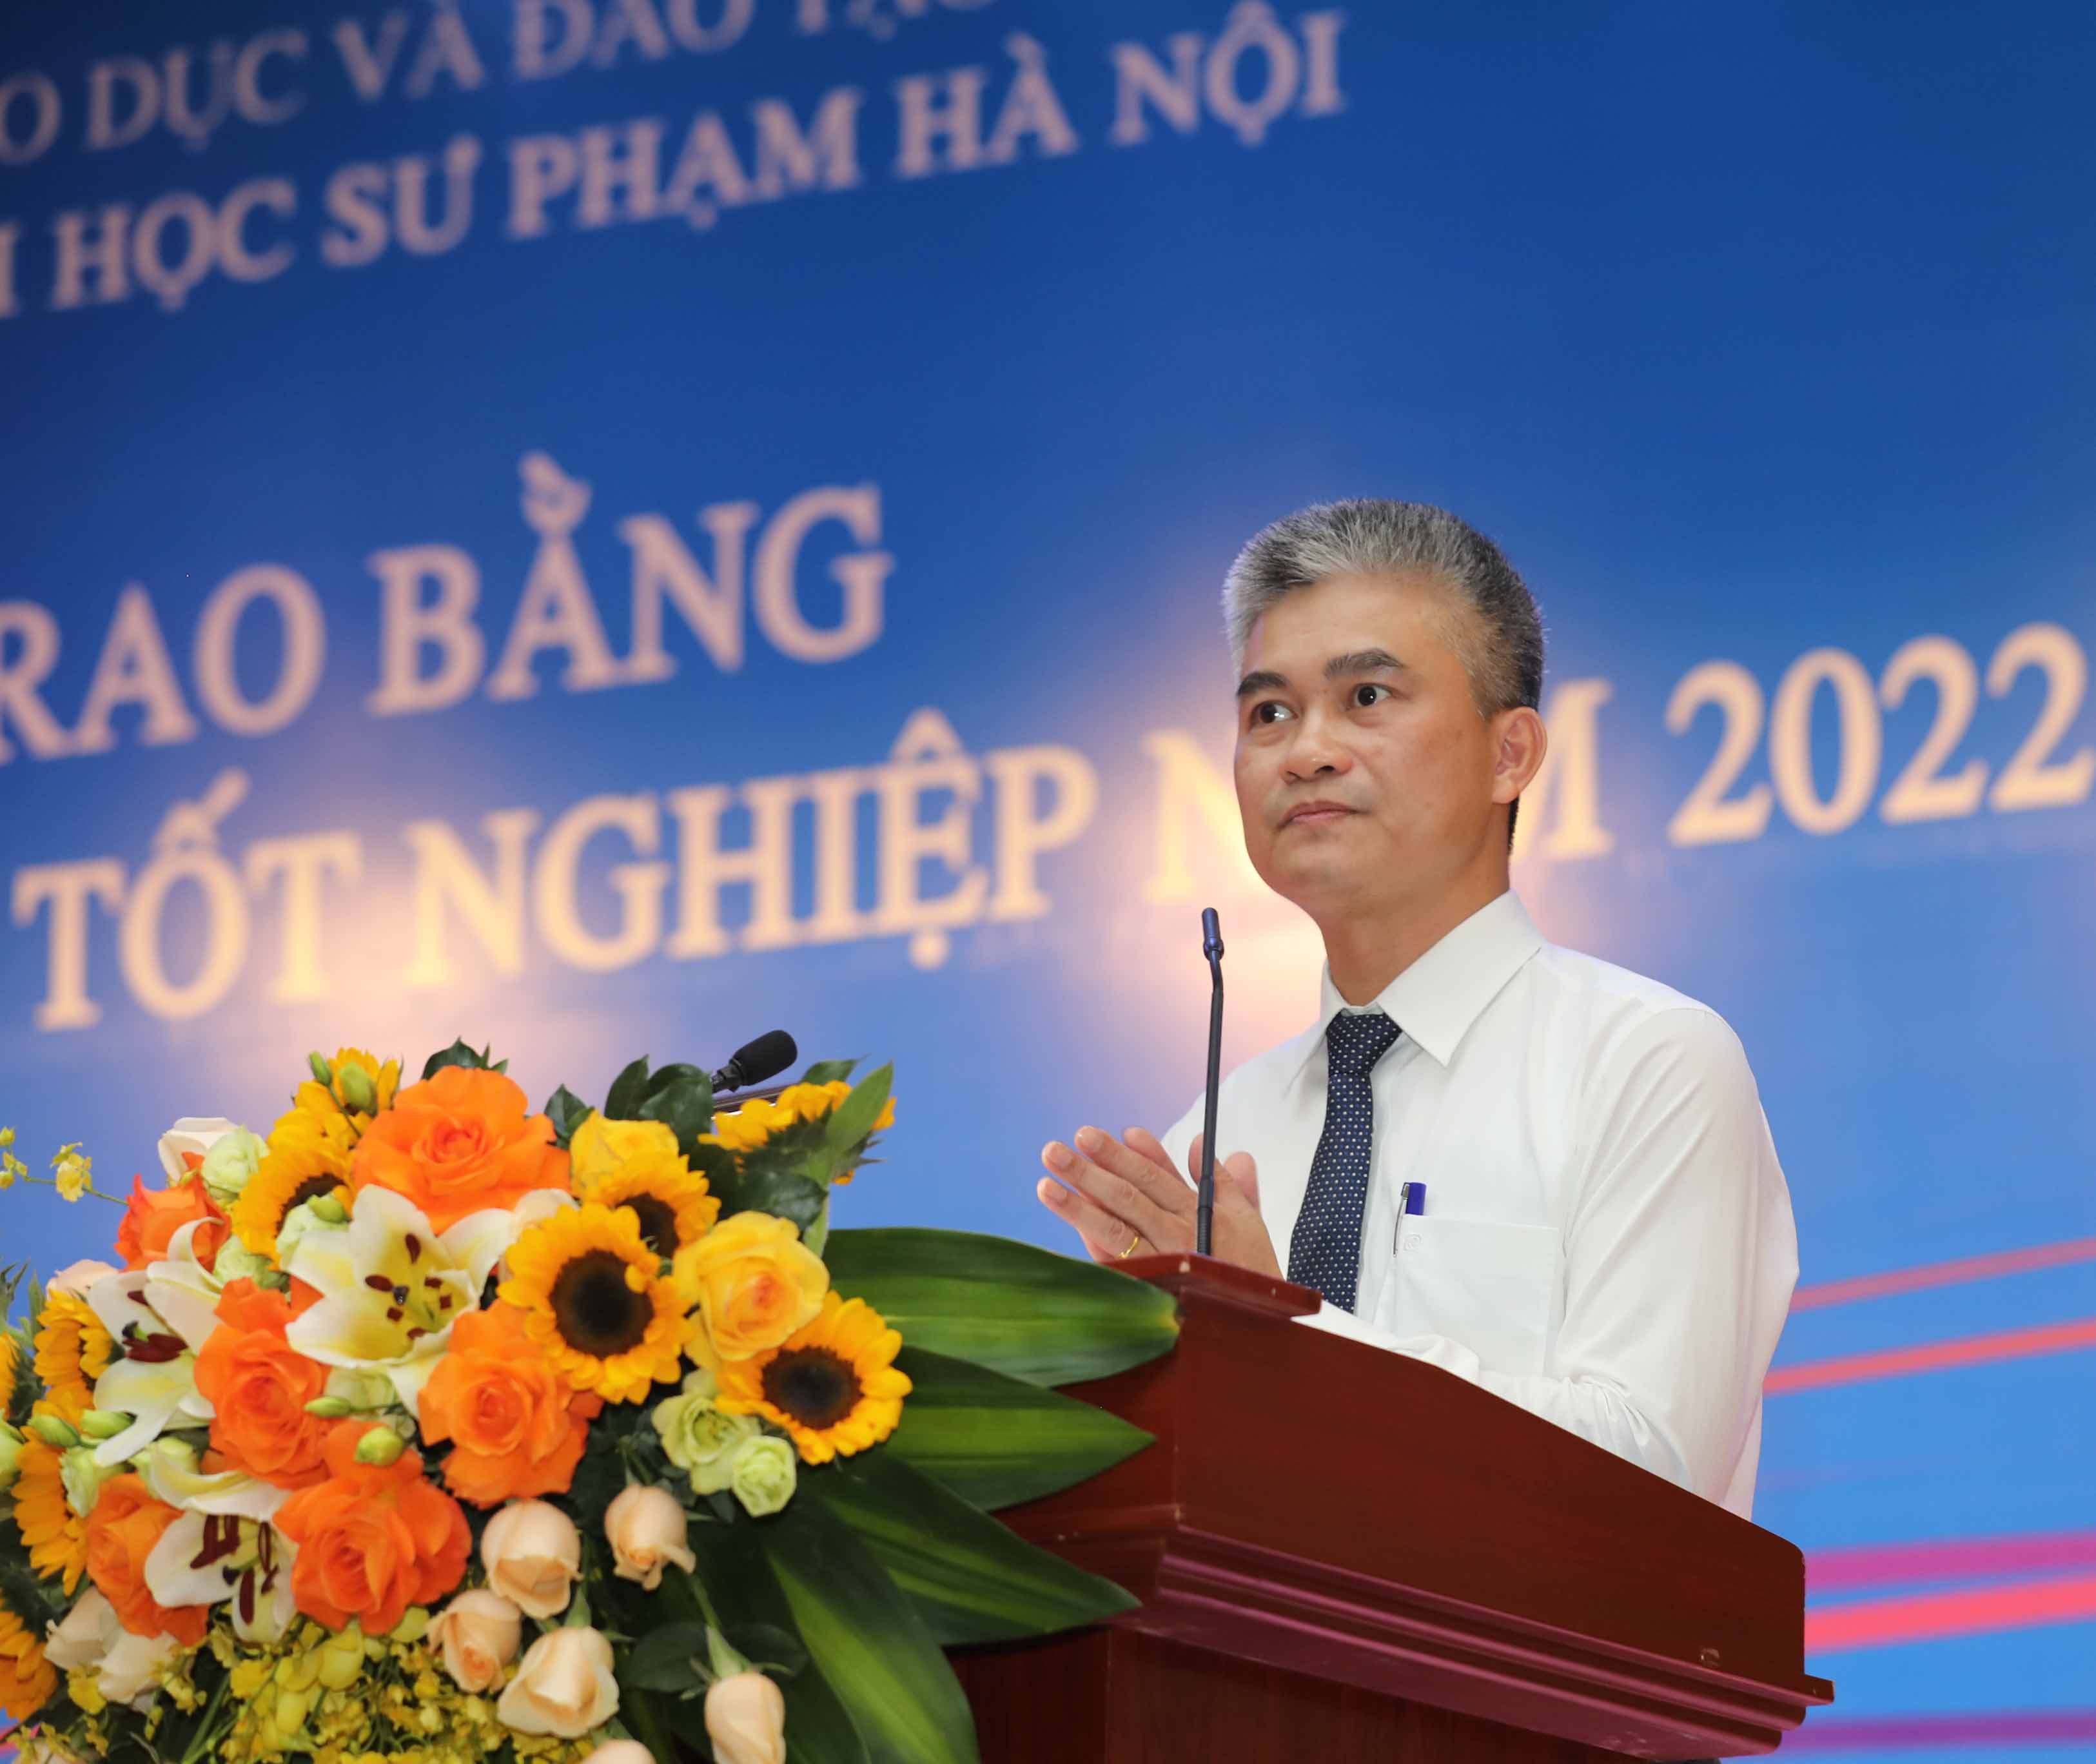 TS. Lê Như Thục - Phó Trưởng phòng Sau đại học - Thừa ủy quyền của Hiệu trưởng Trường ĐHSP Hà Nội công bố Quyết định công nhận học vị TS, ThS tốt nghiệp năm 2022.